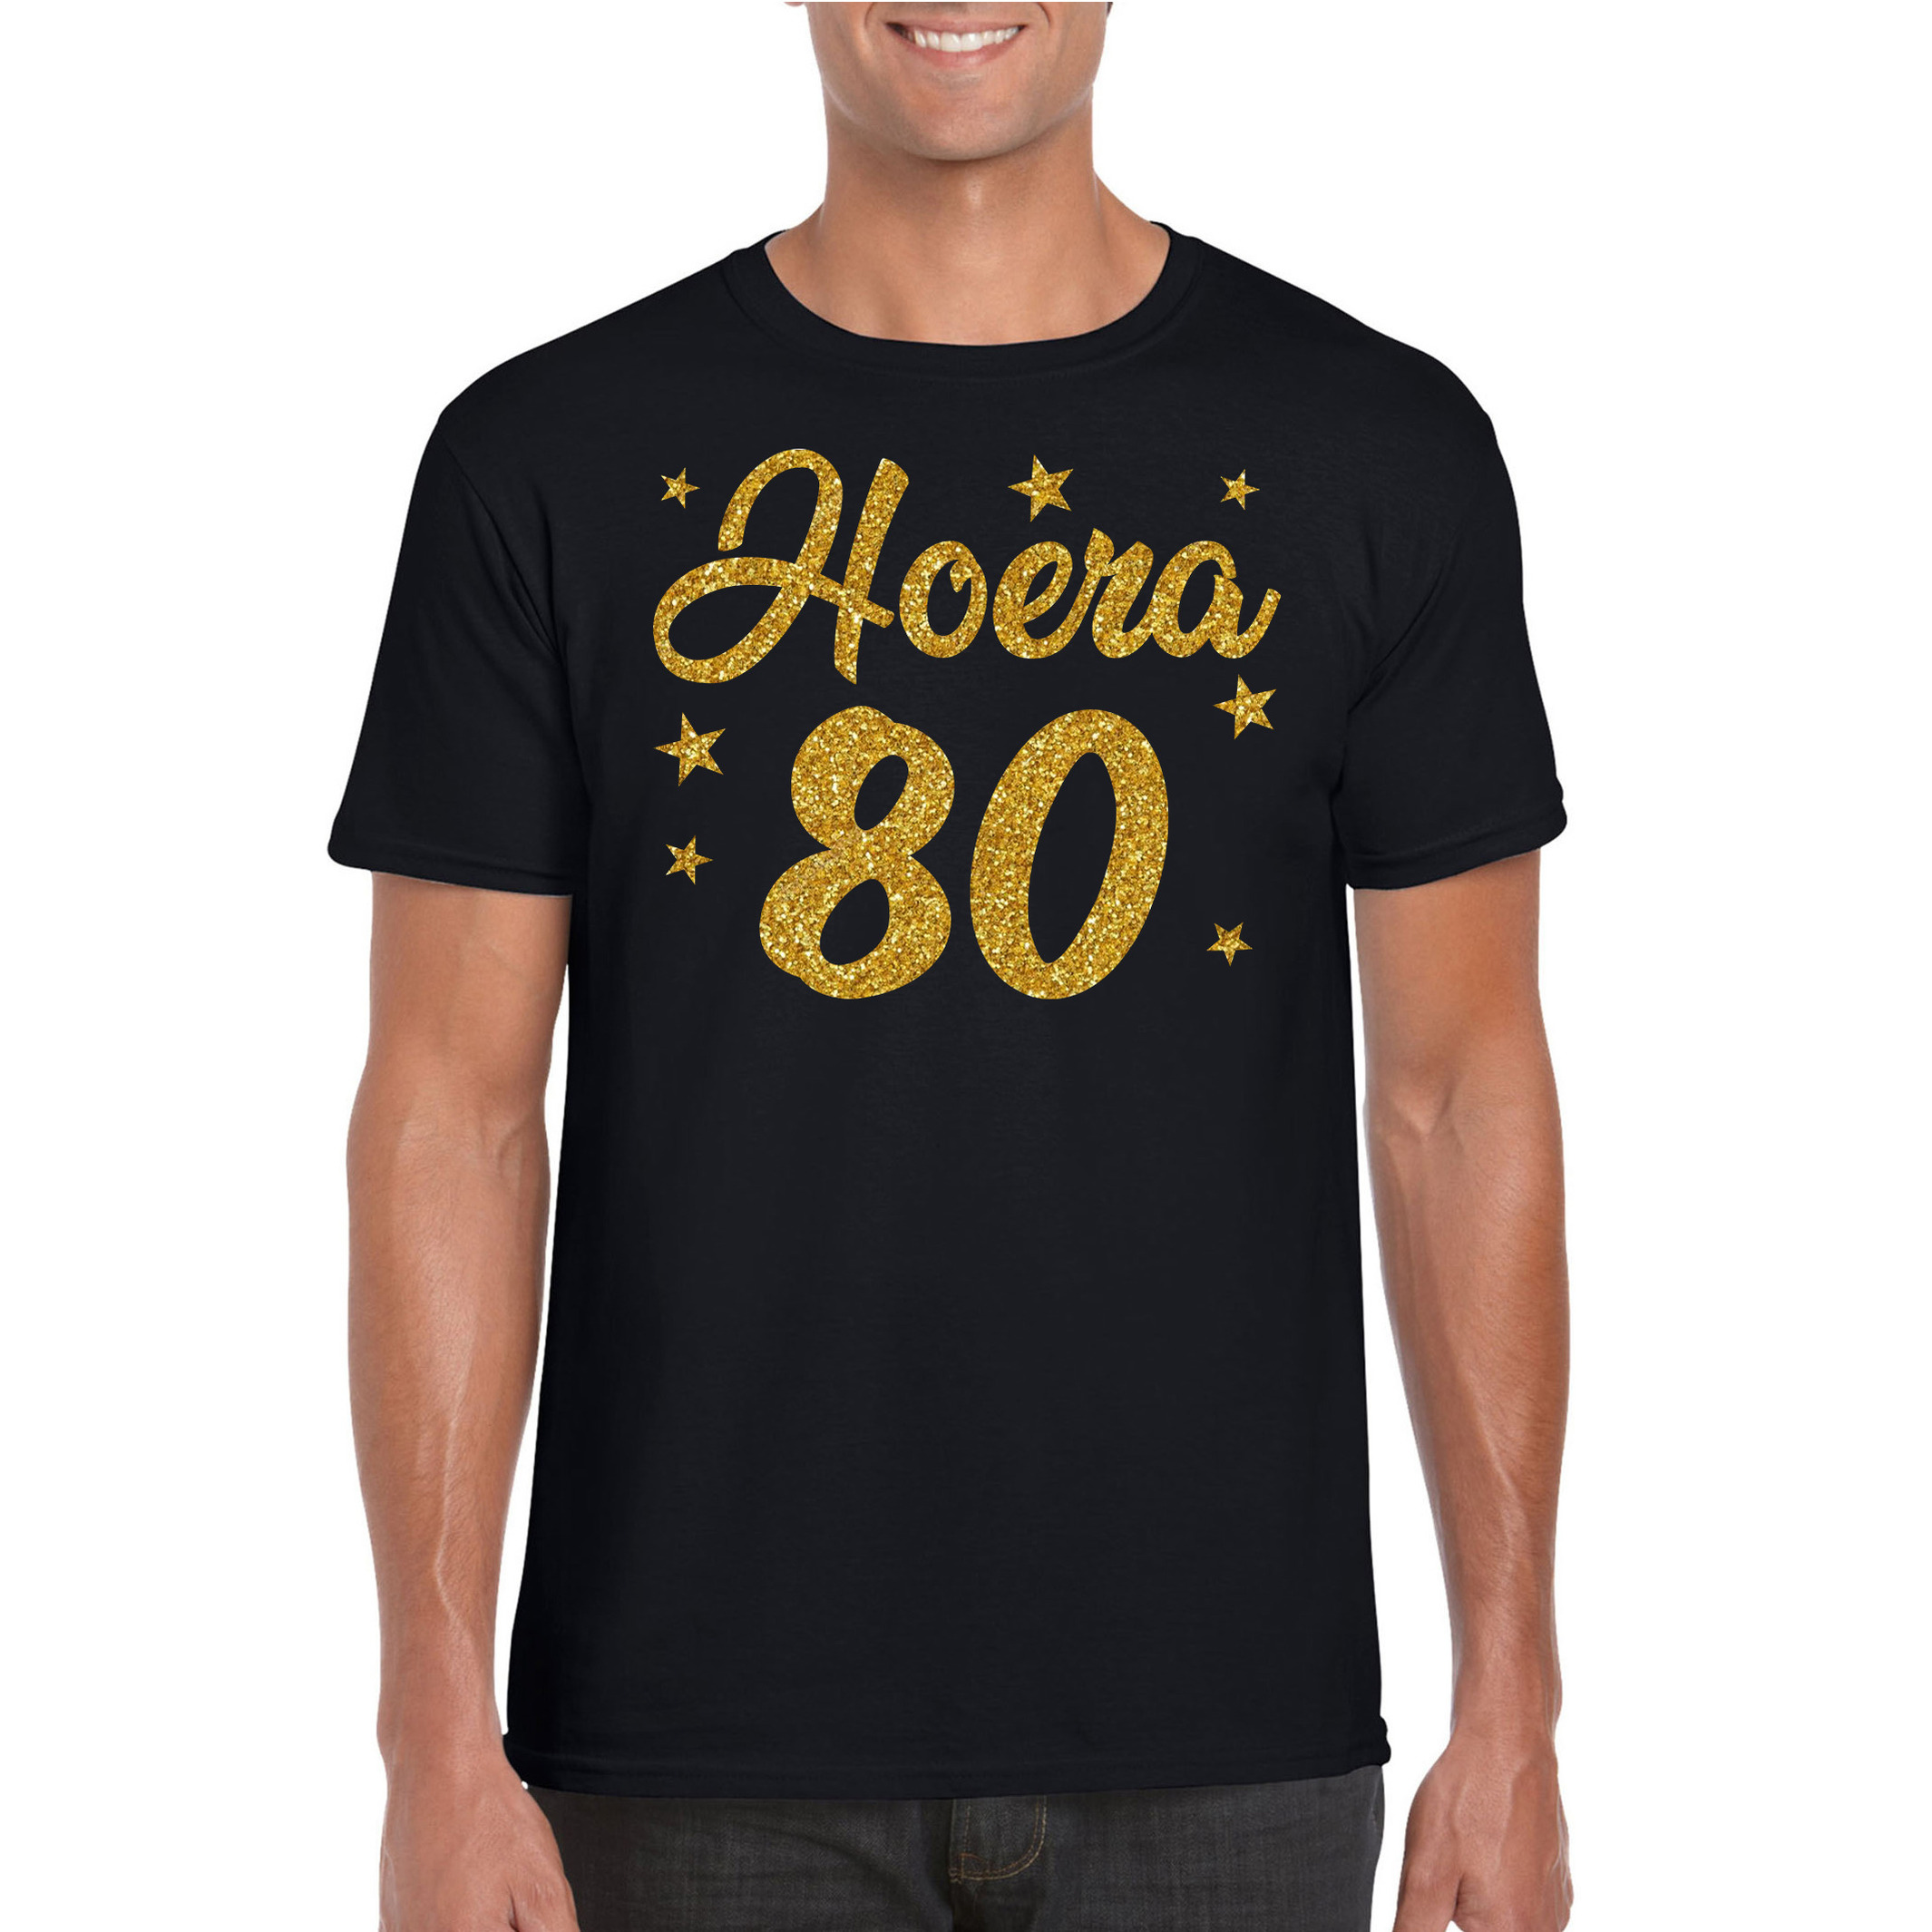 Hoera 80 jaar verjaardag cadeau t-shirt goud glitter op zwart heren